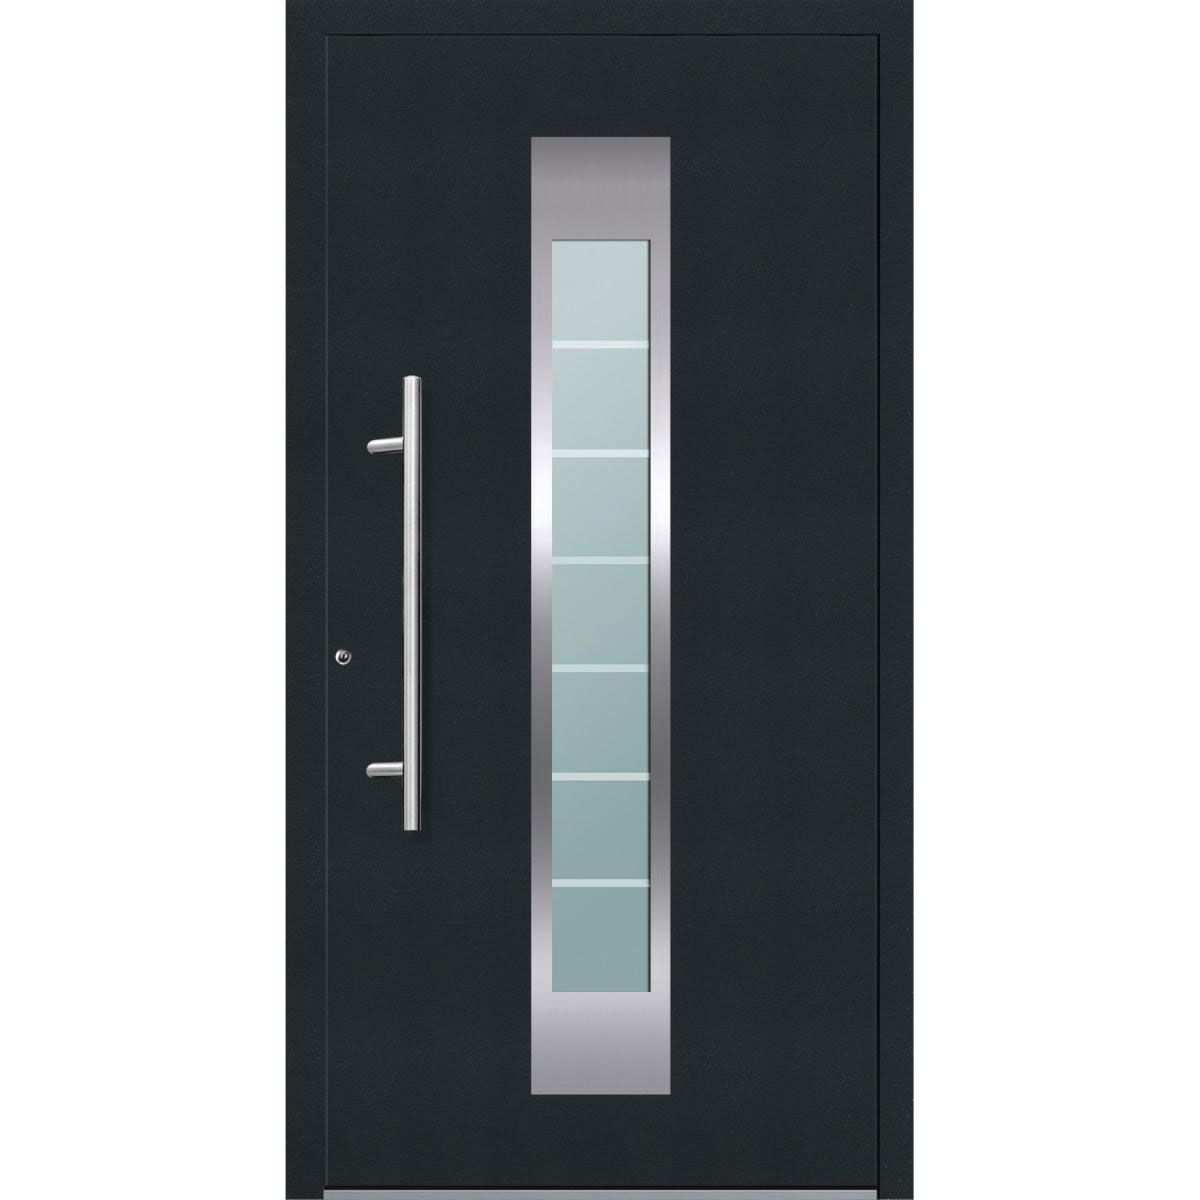 Aluminium Sicherheits-Haustür „Florenz Exklusiv“, 75mm, anthrazit, 110x210 cm, Anschlag links, inkl. Griffset